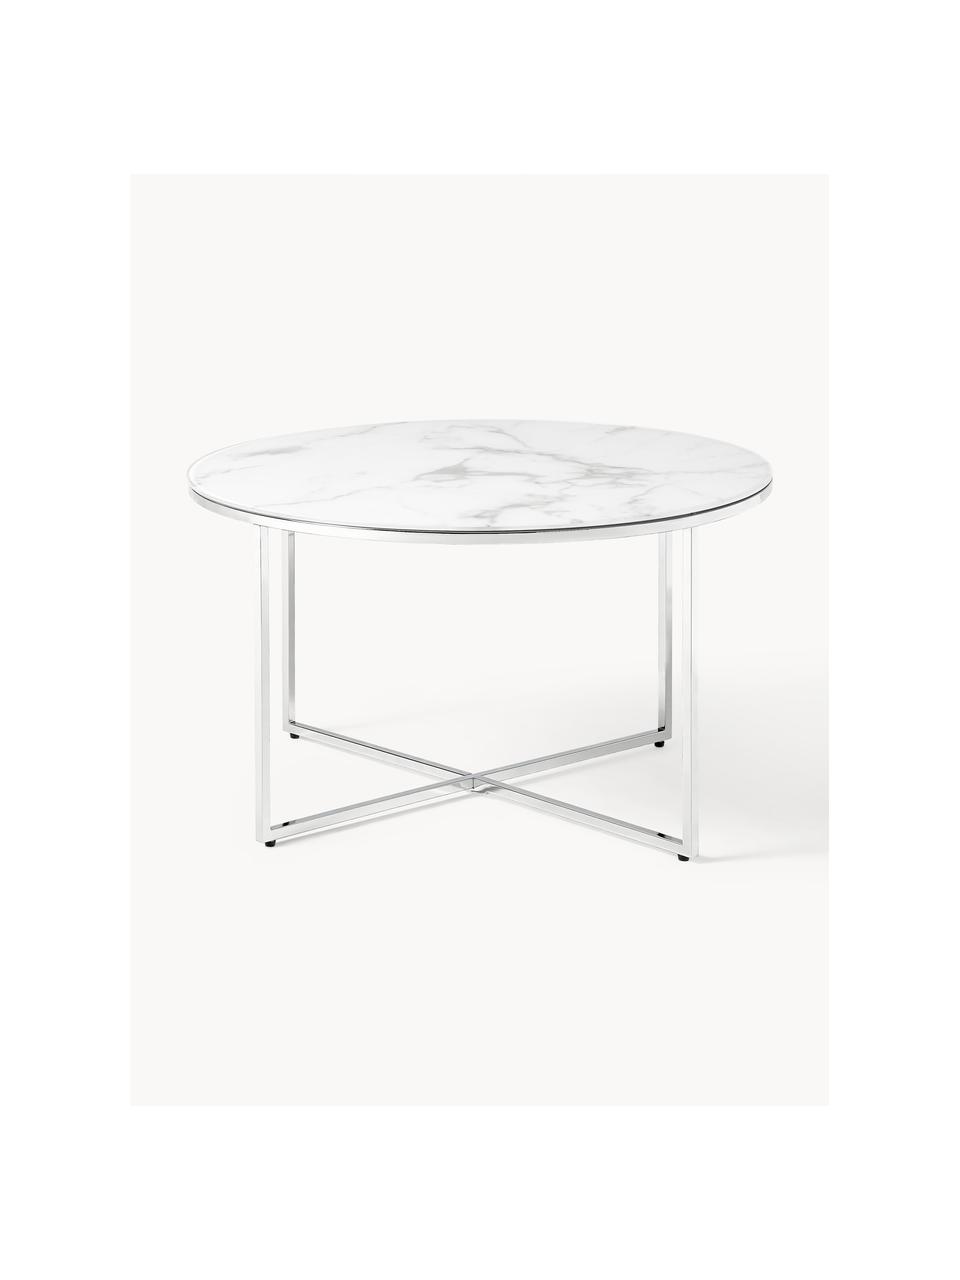 Table basse ronde look marbre Antigua, Blanc look marbre, argenté, Ø 80 cm